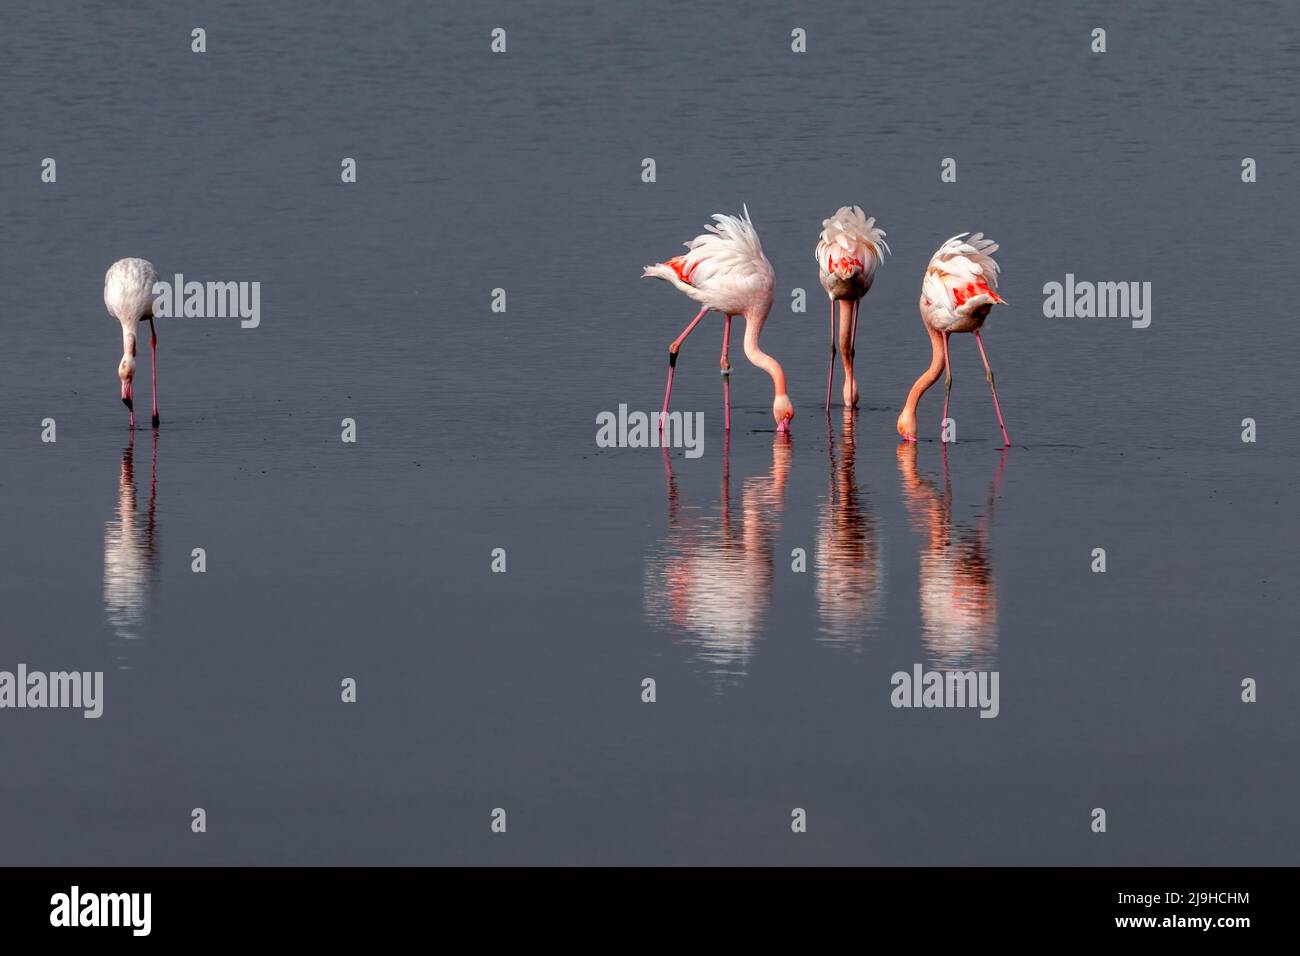 Groupe de flamants roses et leurs réflexions dans le lagon de Kalochori, Grèce. Faune et flore scène animale de la nature Banque D'Images